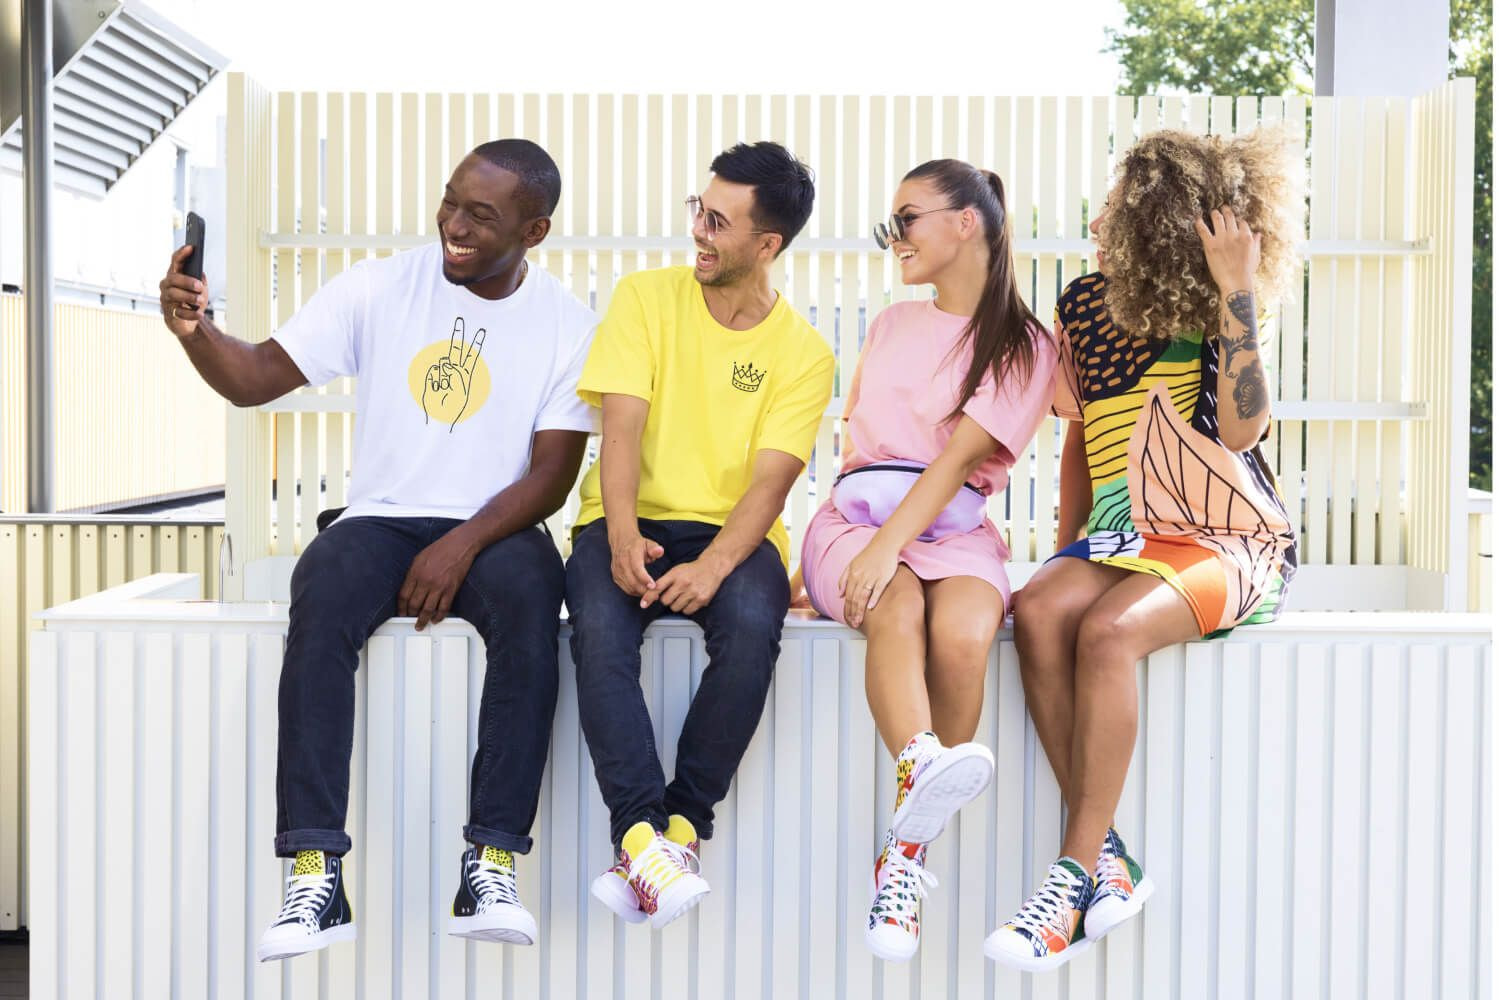 Amici studenti in abiti colorati in stile streetwear che scattano foto con lo smartphone e indossano occhiali da sole.